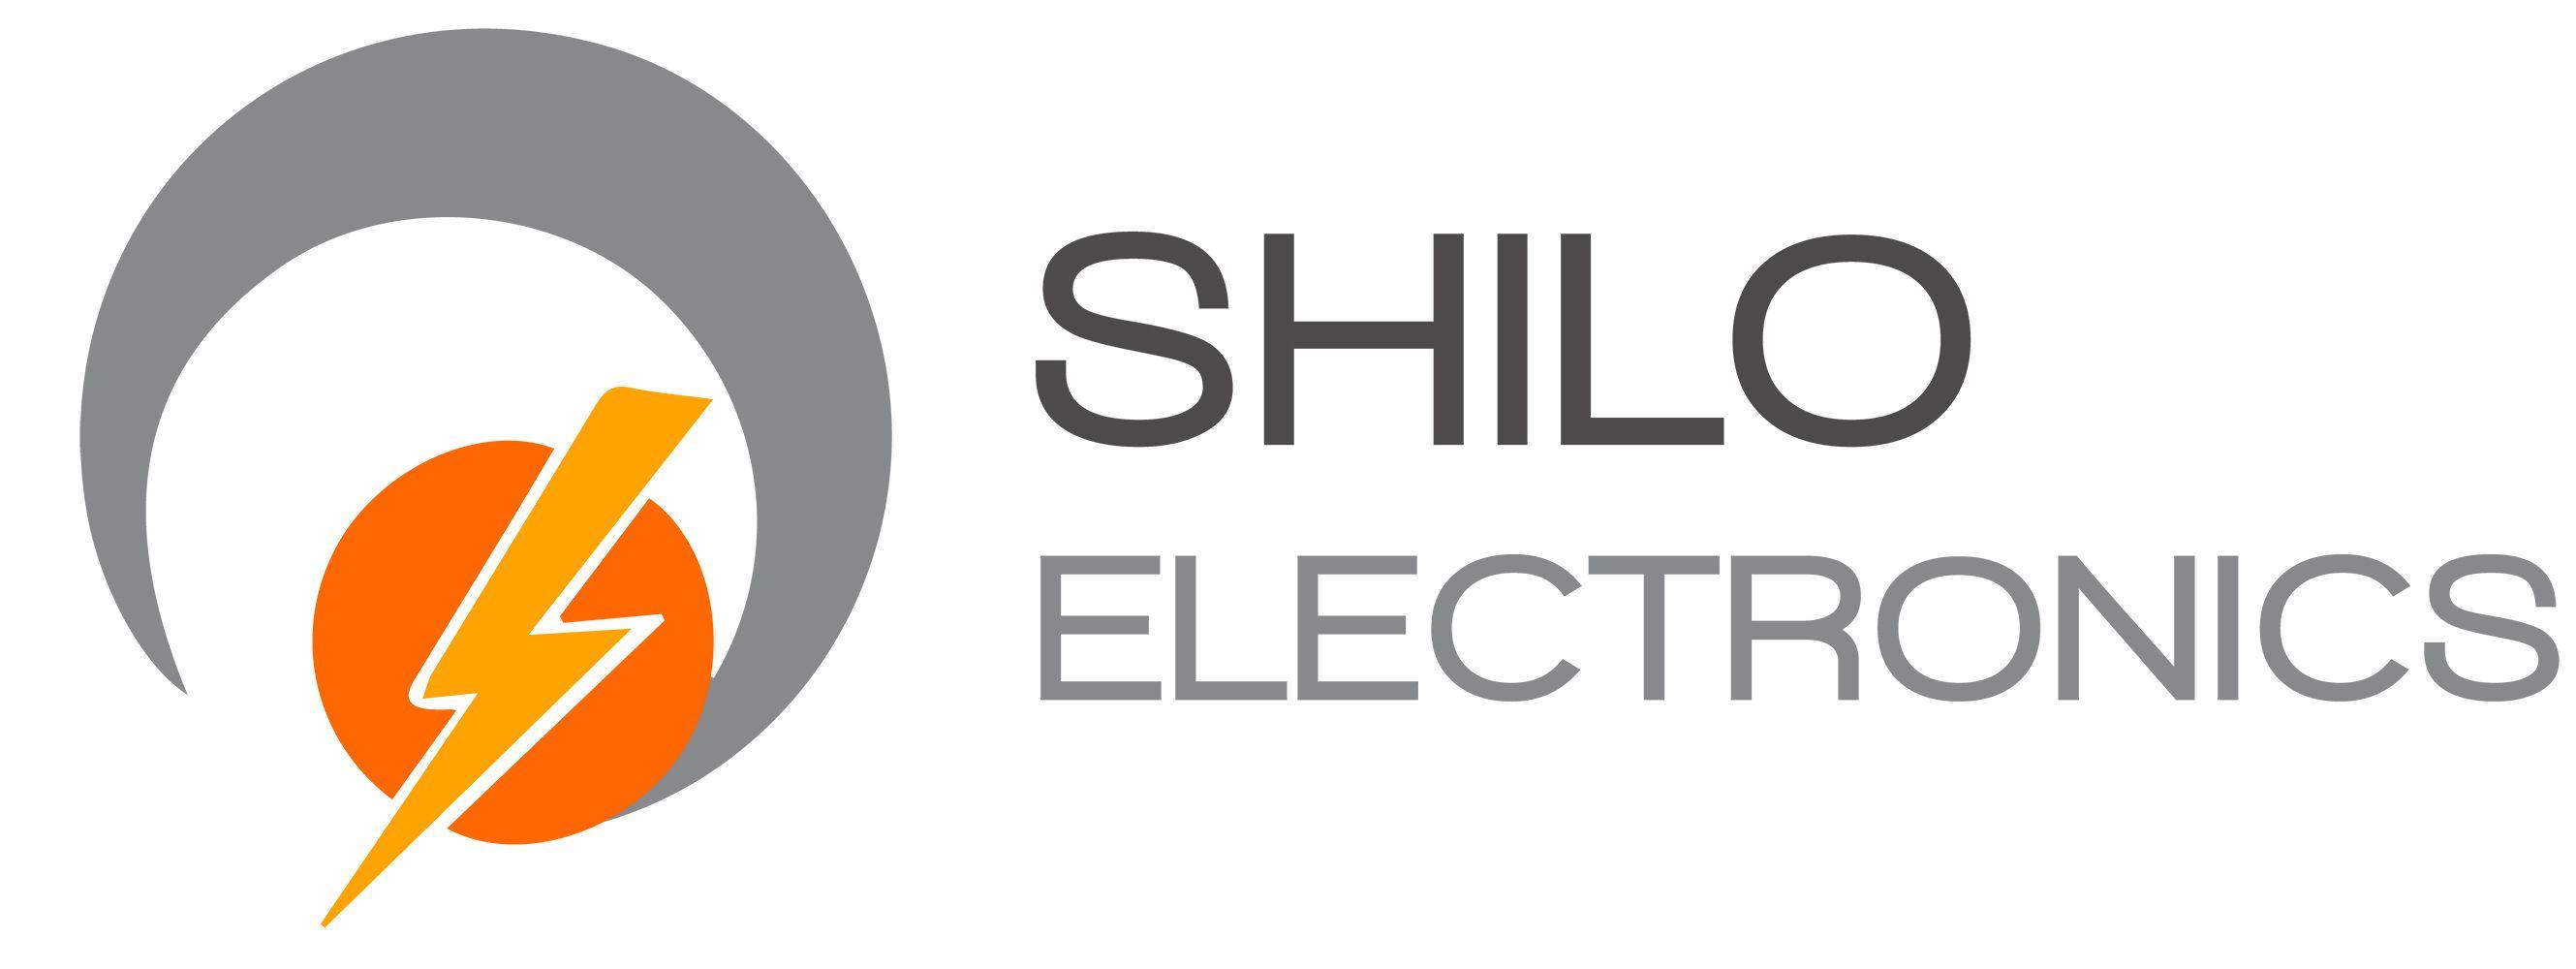 Electronics Logo - Shilo Electronics Logo Design Online Marketing